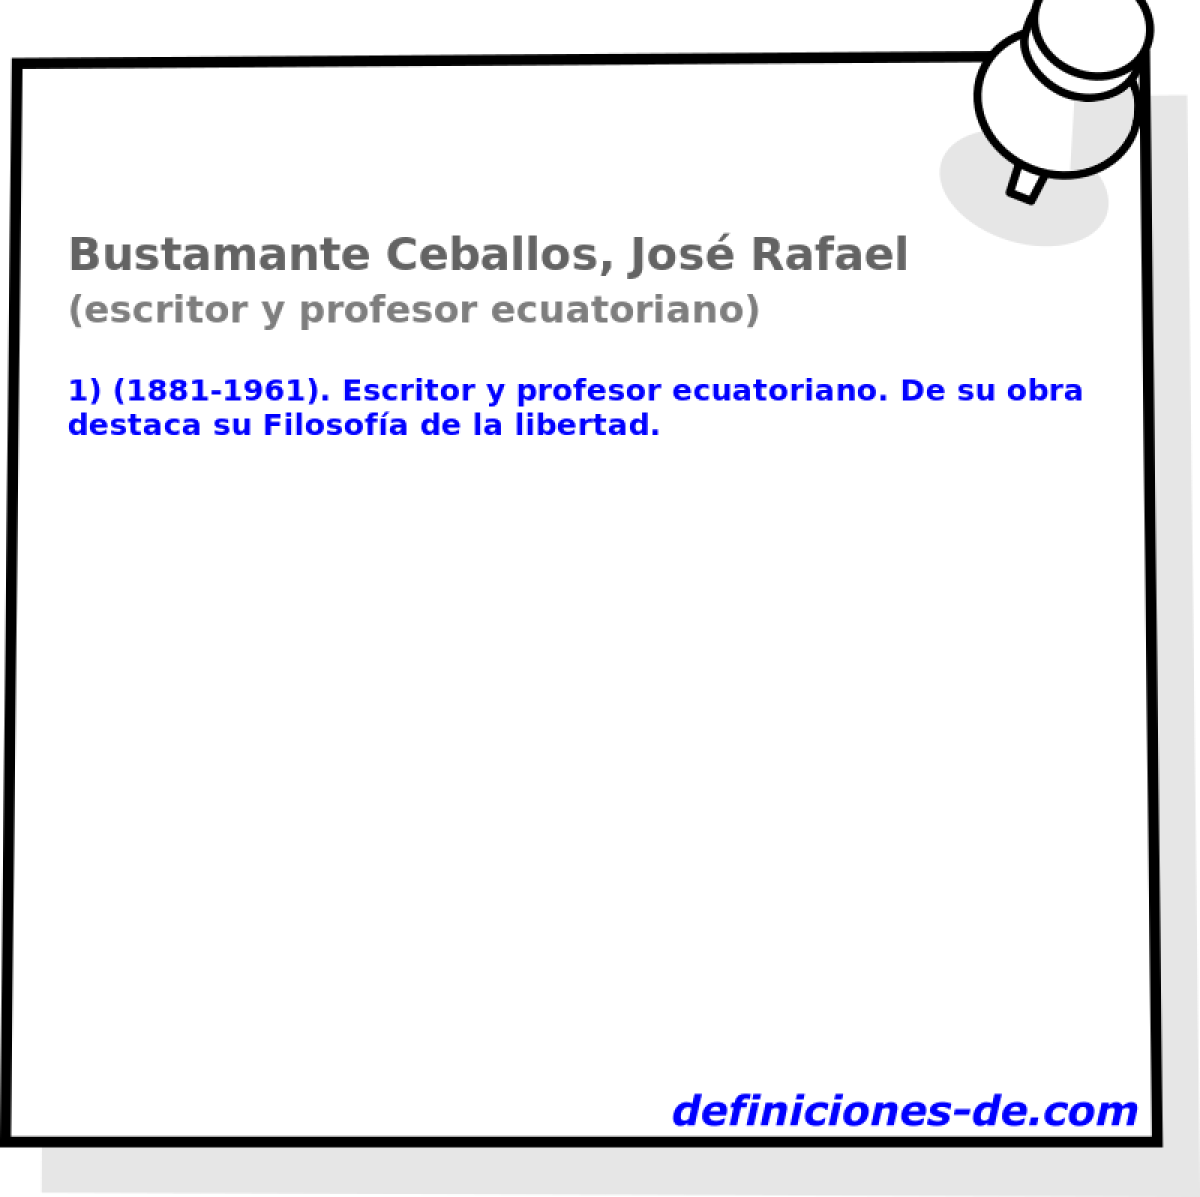 Bustamante Ceballos, Jos Rafael (escritor y profesor ecuatoriano)